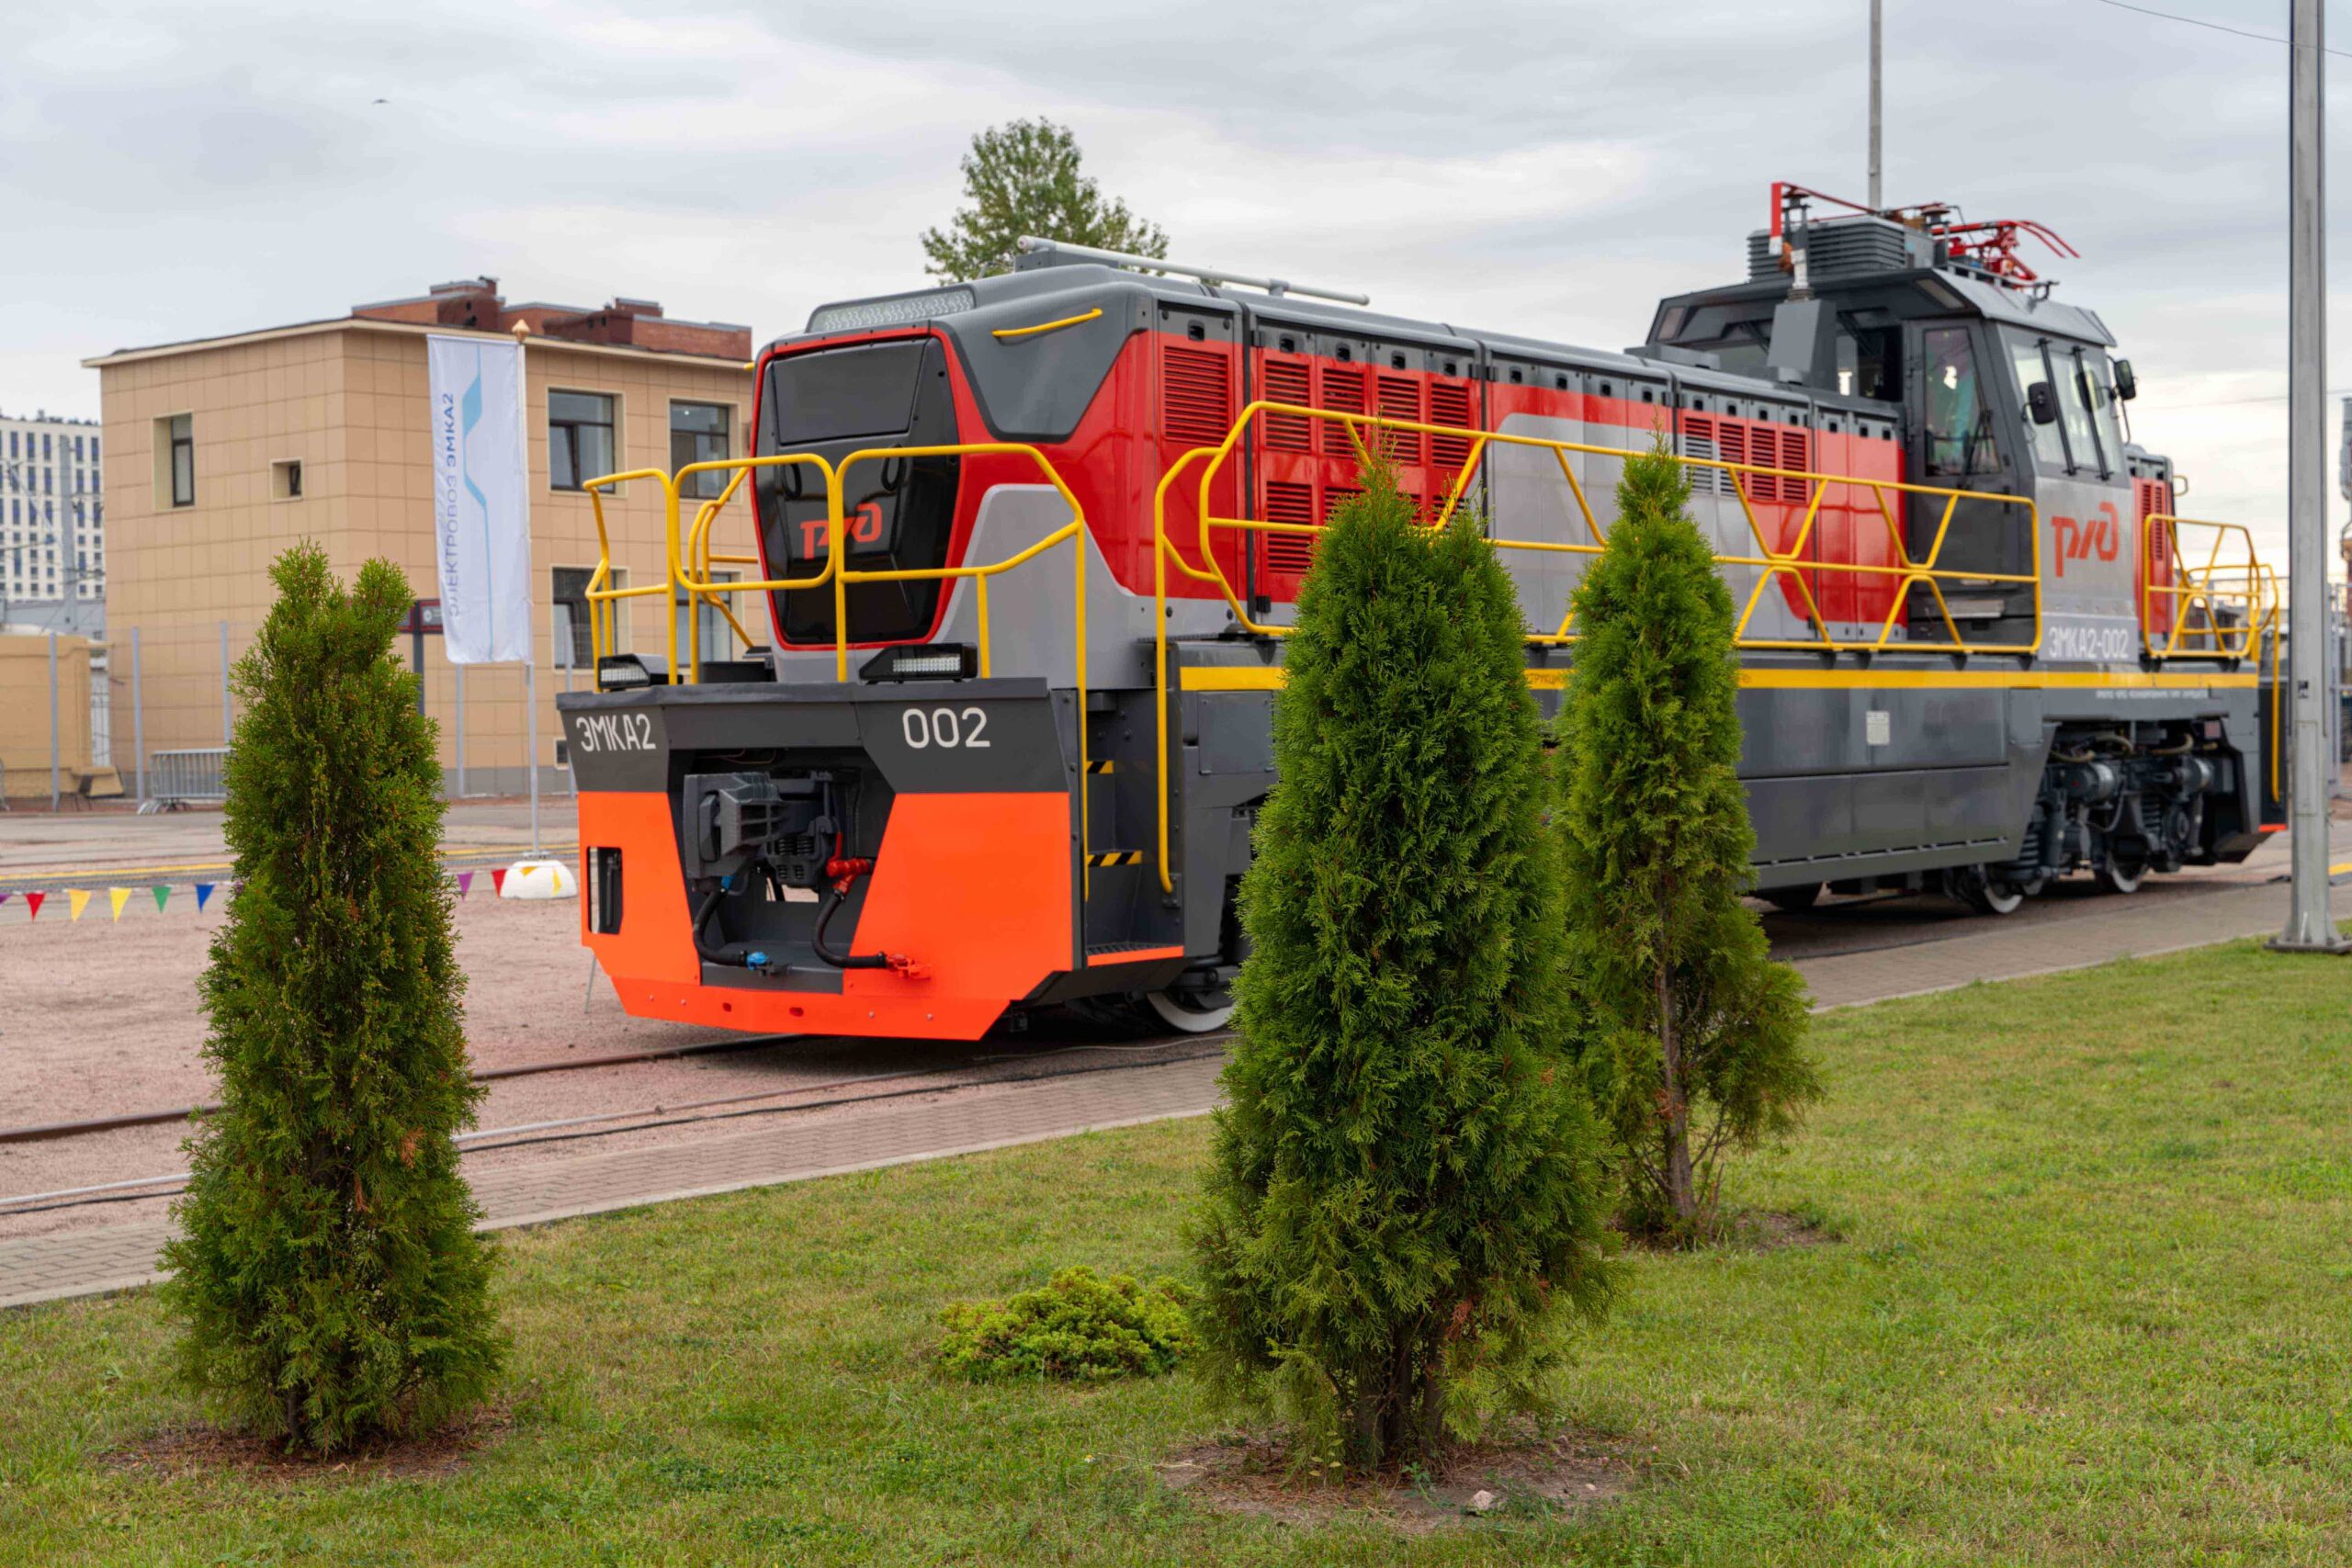 Контактно-аккумуляторный локомотив ЭМКА2 на выставке «PRO//Движение.Экспо» в 2023 году